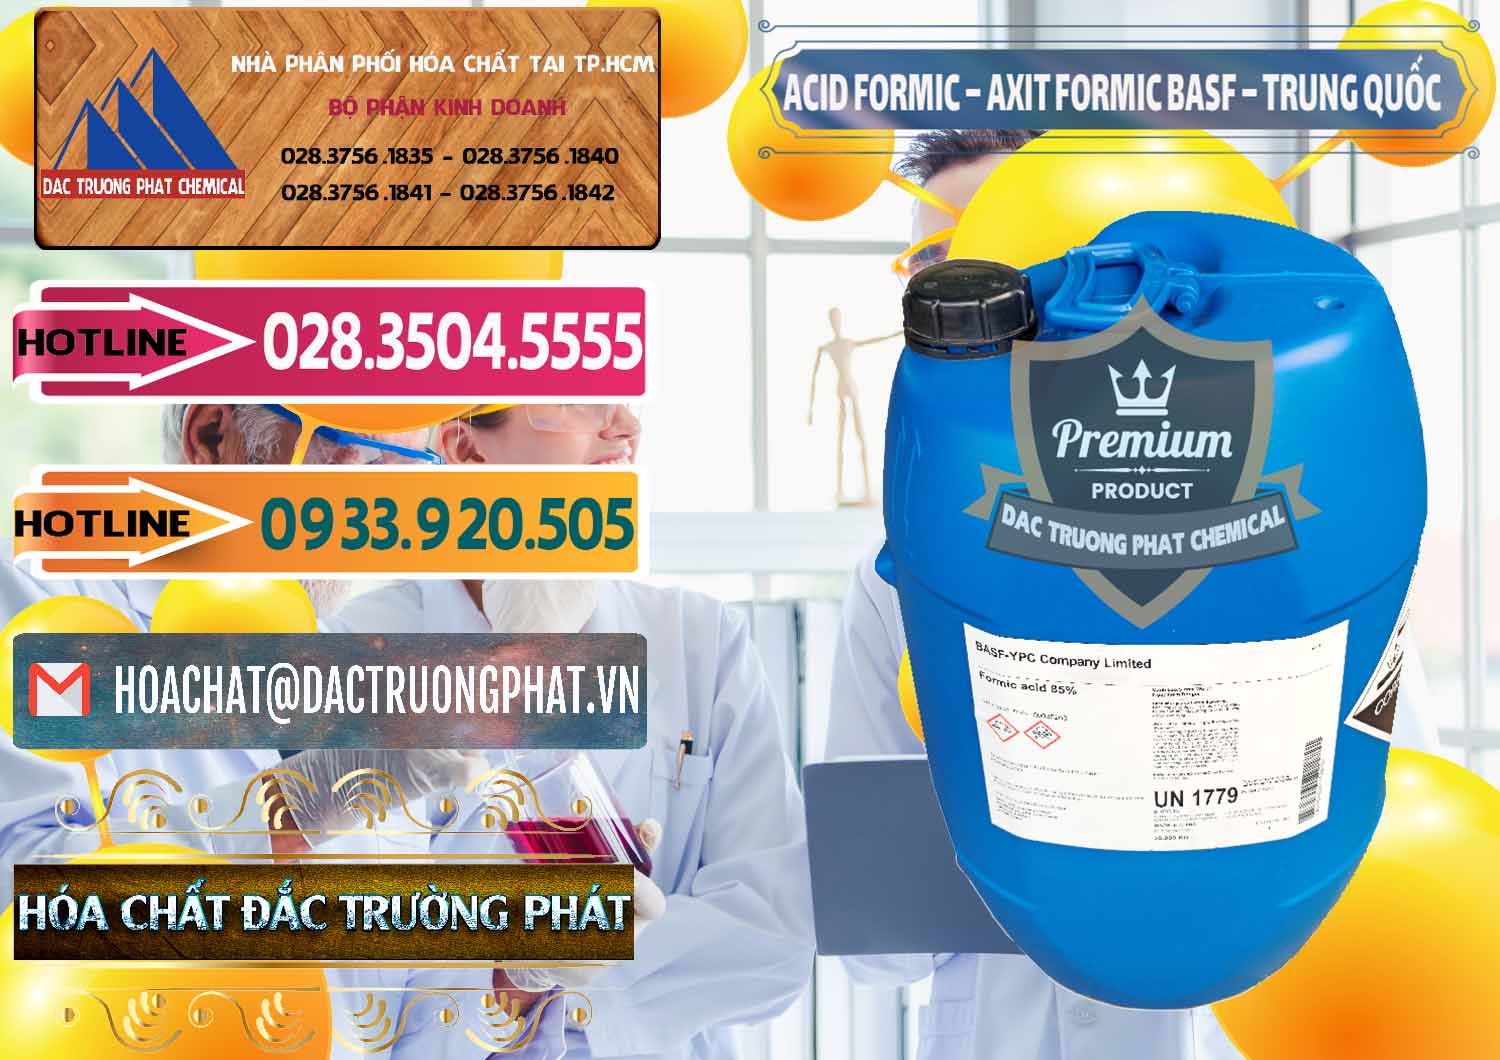 Chuyên bán và cung cấp Acid Formic - Axit Formic BASF Trung Quốc China - 0025 - Đơn vị chuyên nhập khẩu _ cung cấp hóa chất tại TP.HCM - dactruongphat.vn